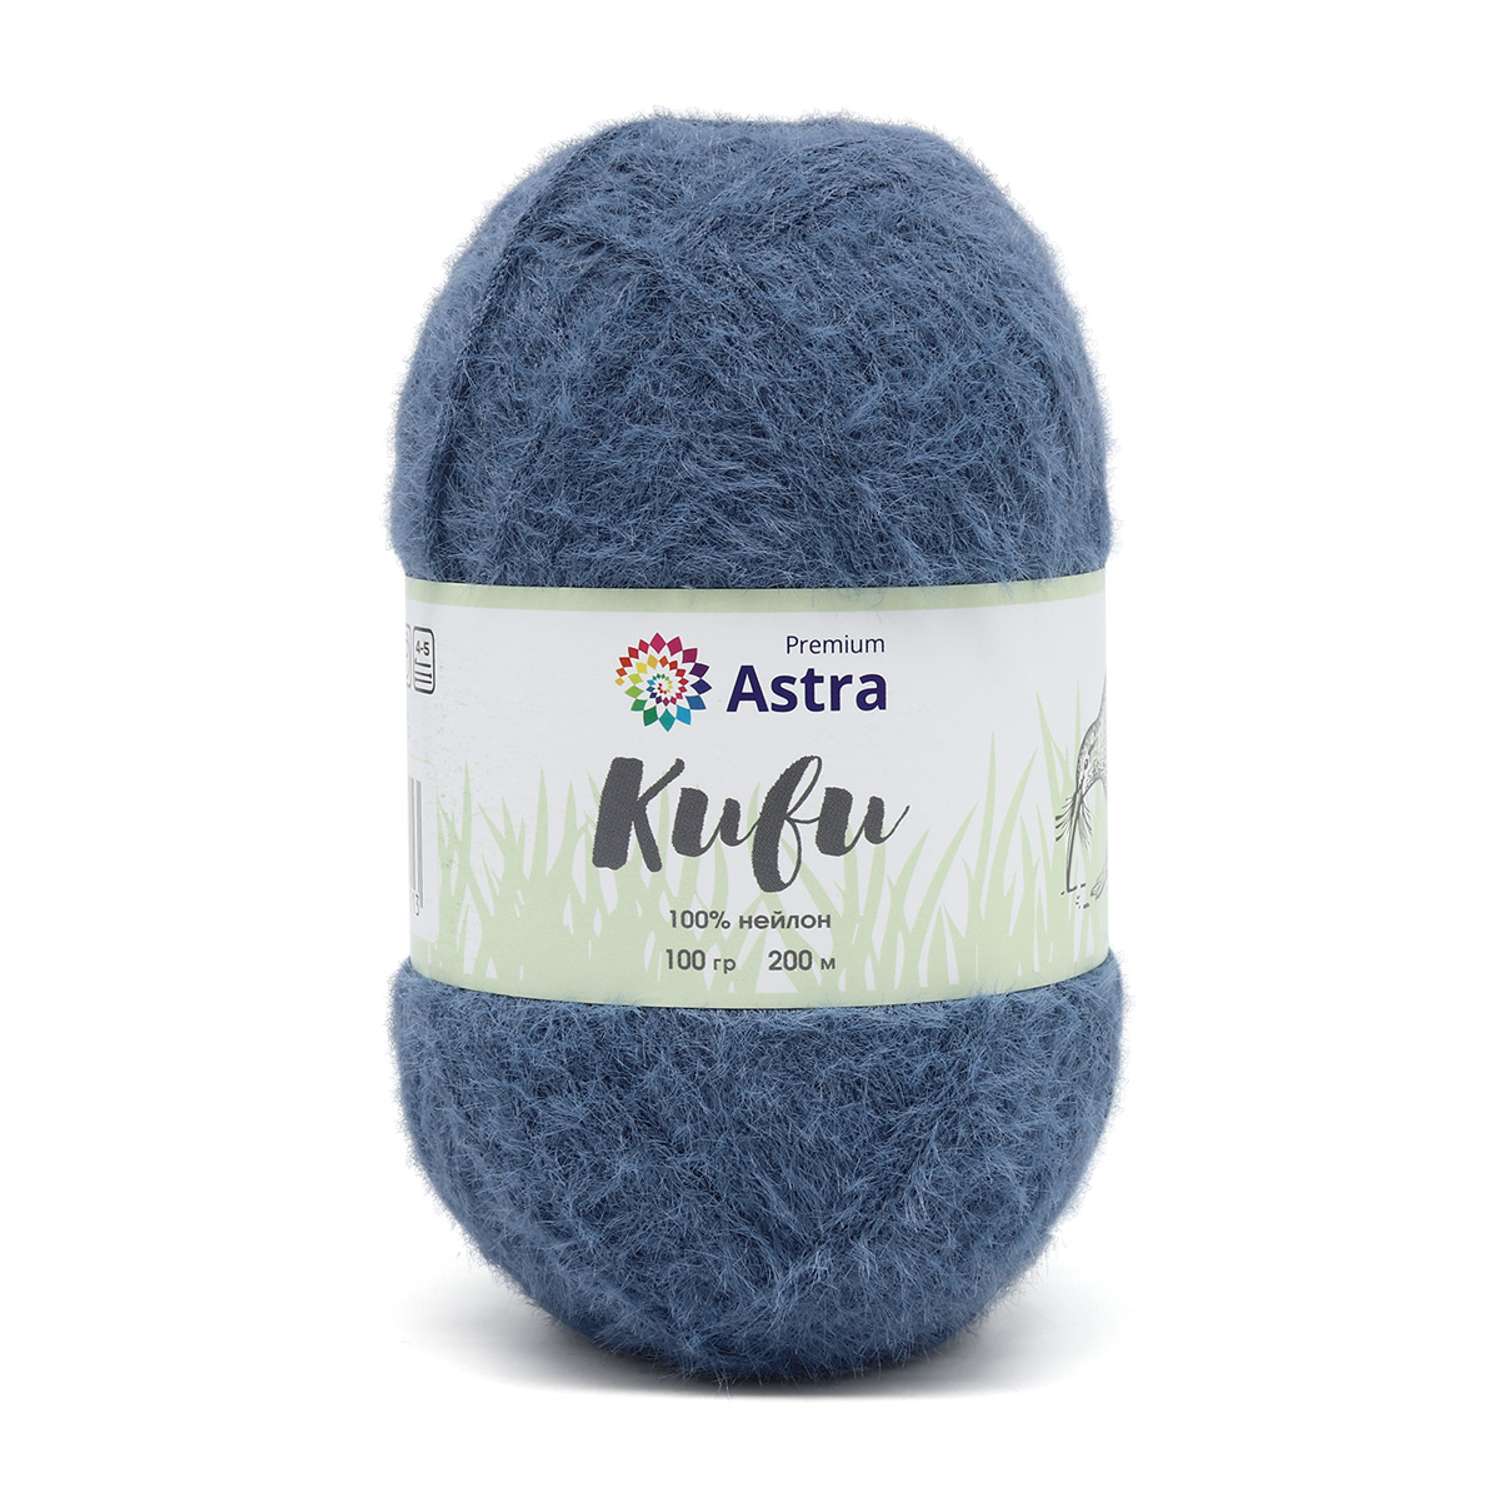 Пряжа для вязания Astra Premium киви фантазийная с выраженным ворсом киви нейлон 100 гр 200 м 05 джинсовый 3 мотка - фото 3